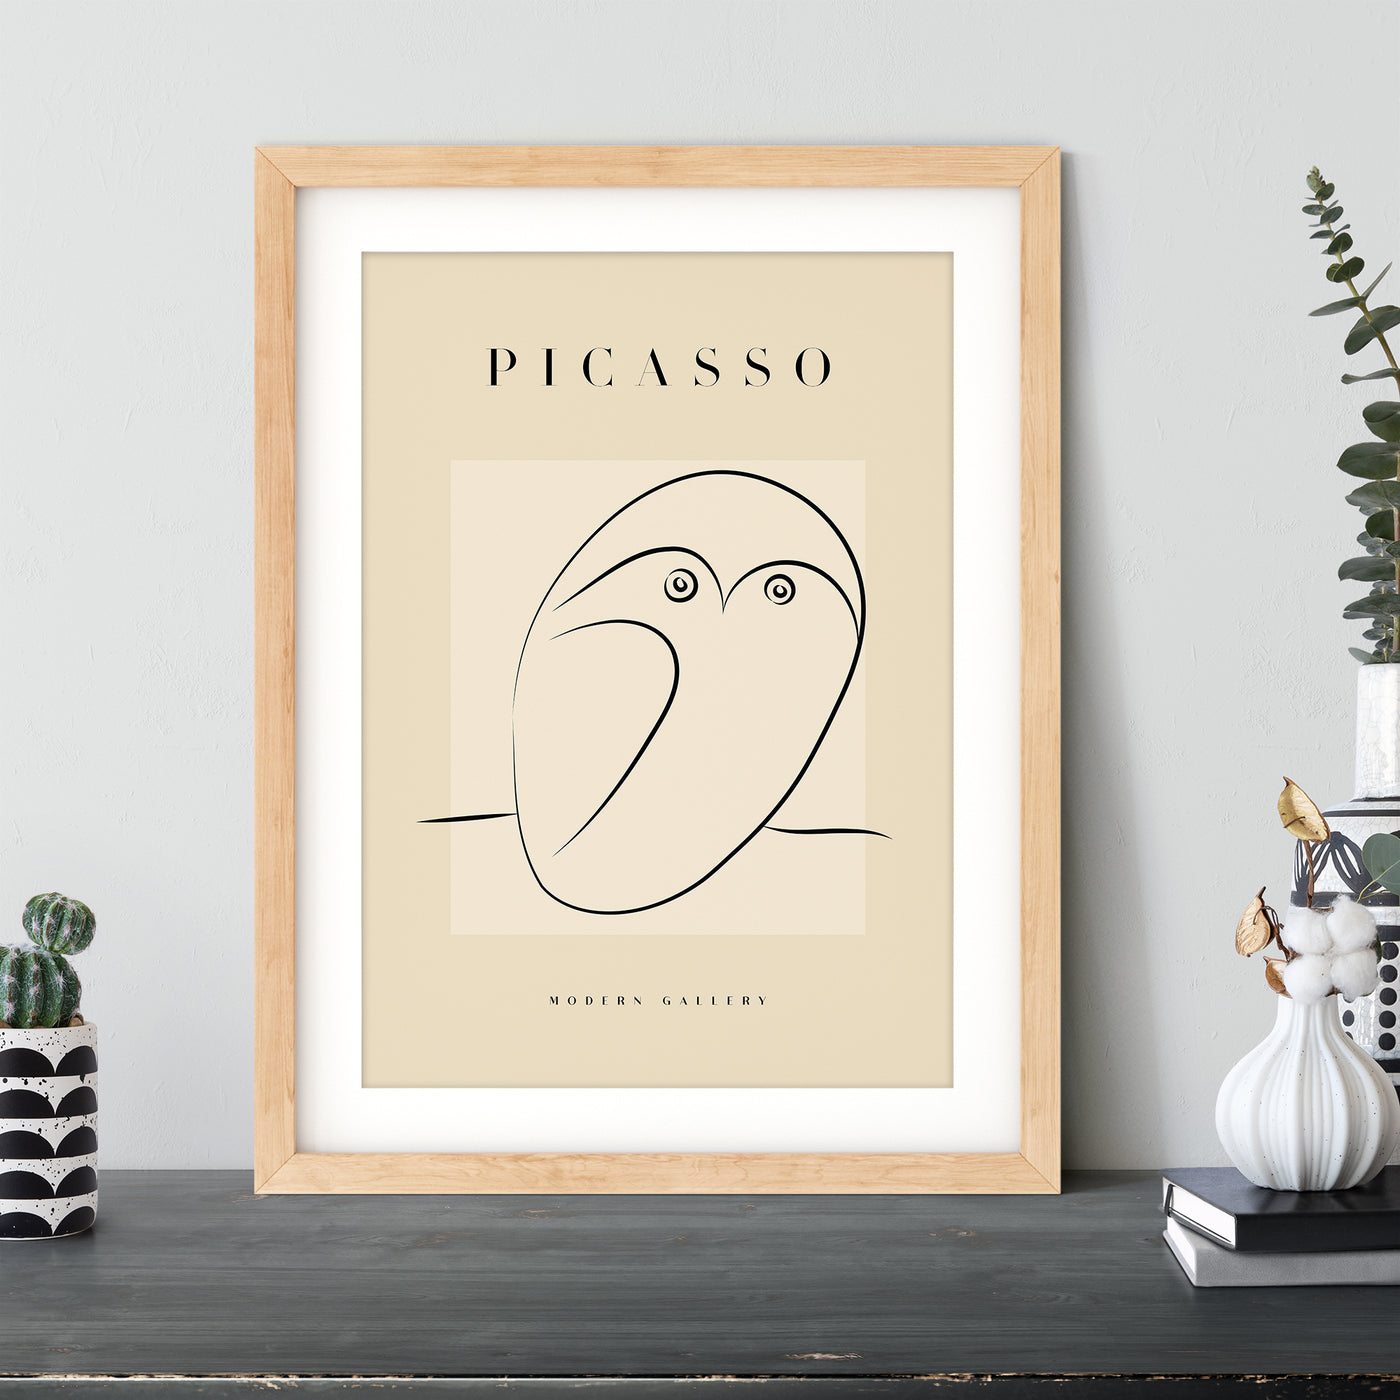 Pablo Picasso - #5